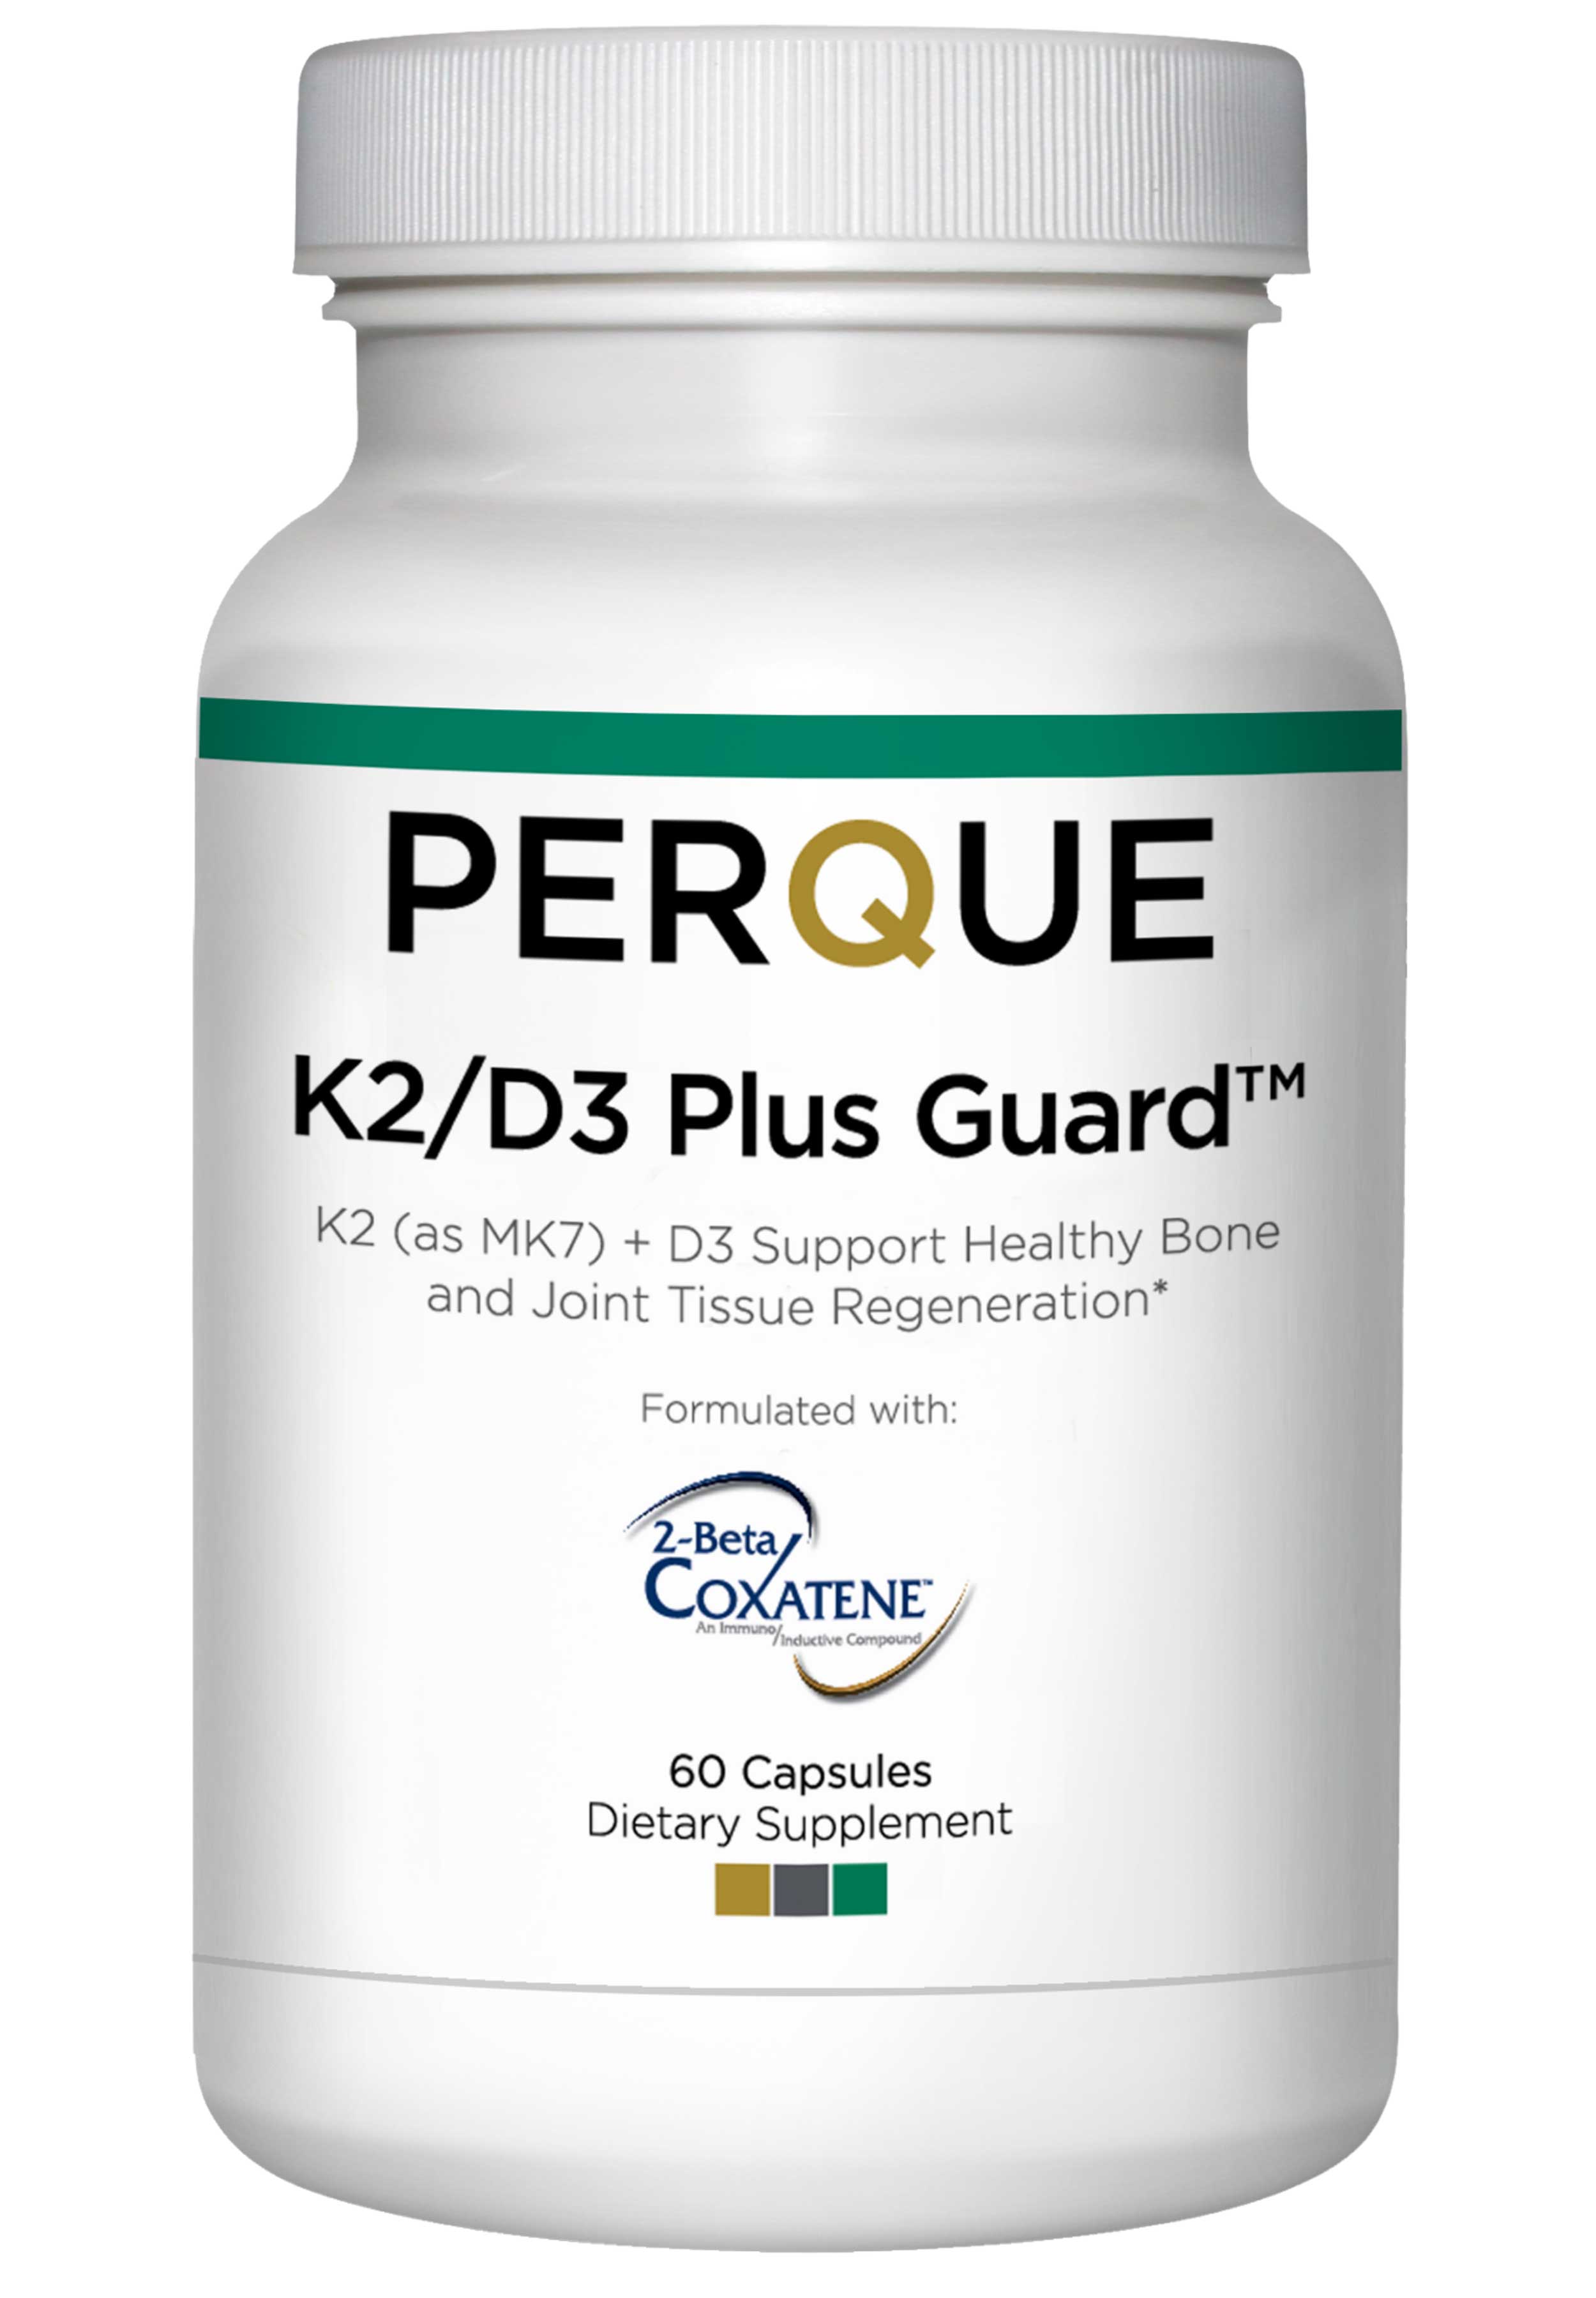 Perque K2/D3 Plus Guard